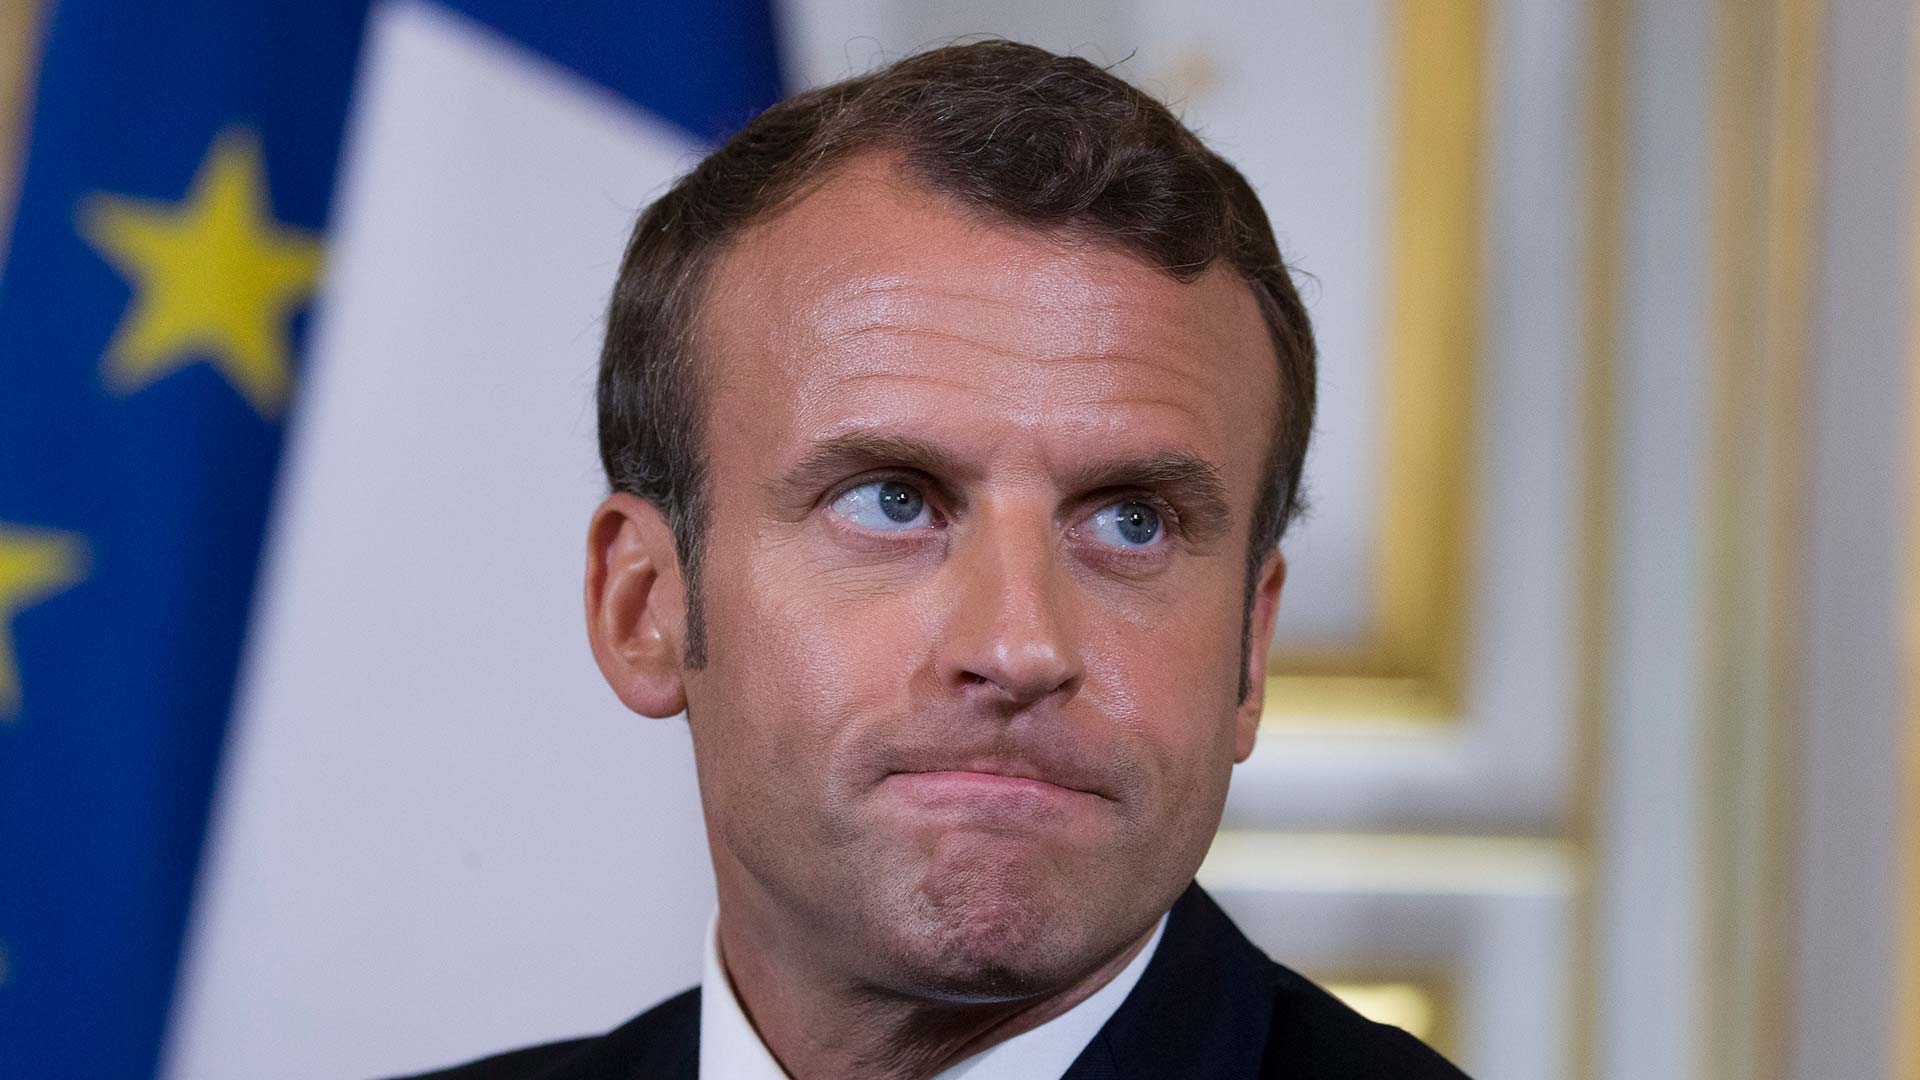 El Gobierno de Macron baraja romper “la cooperación política” con Cs si pacta con Vox